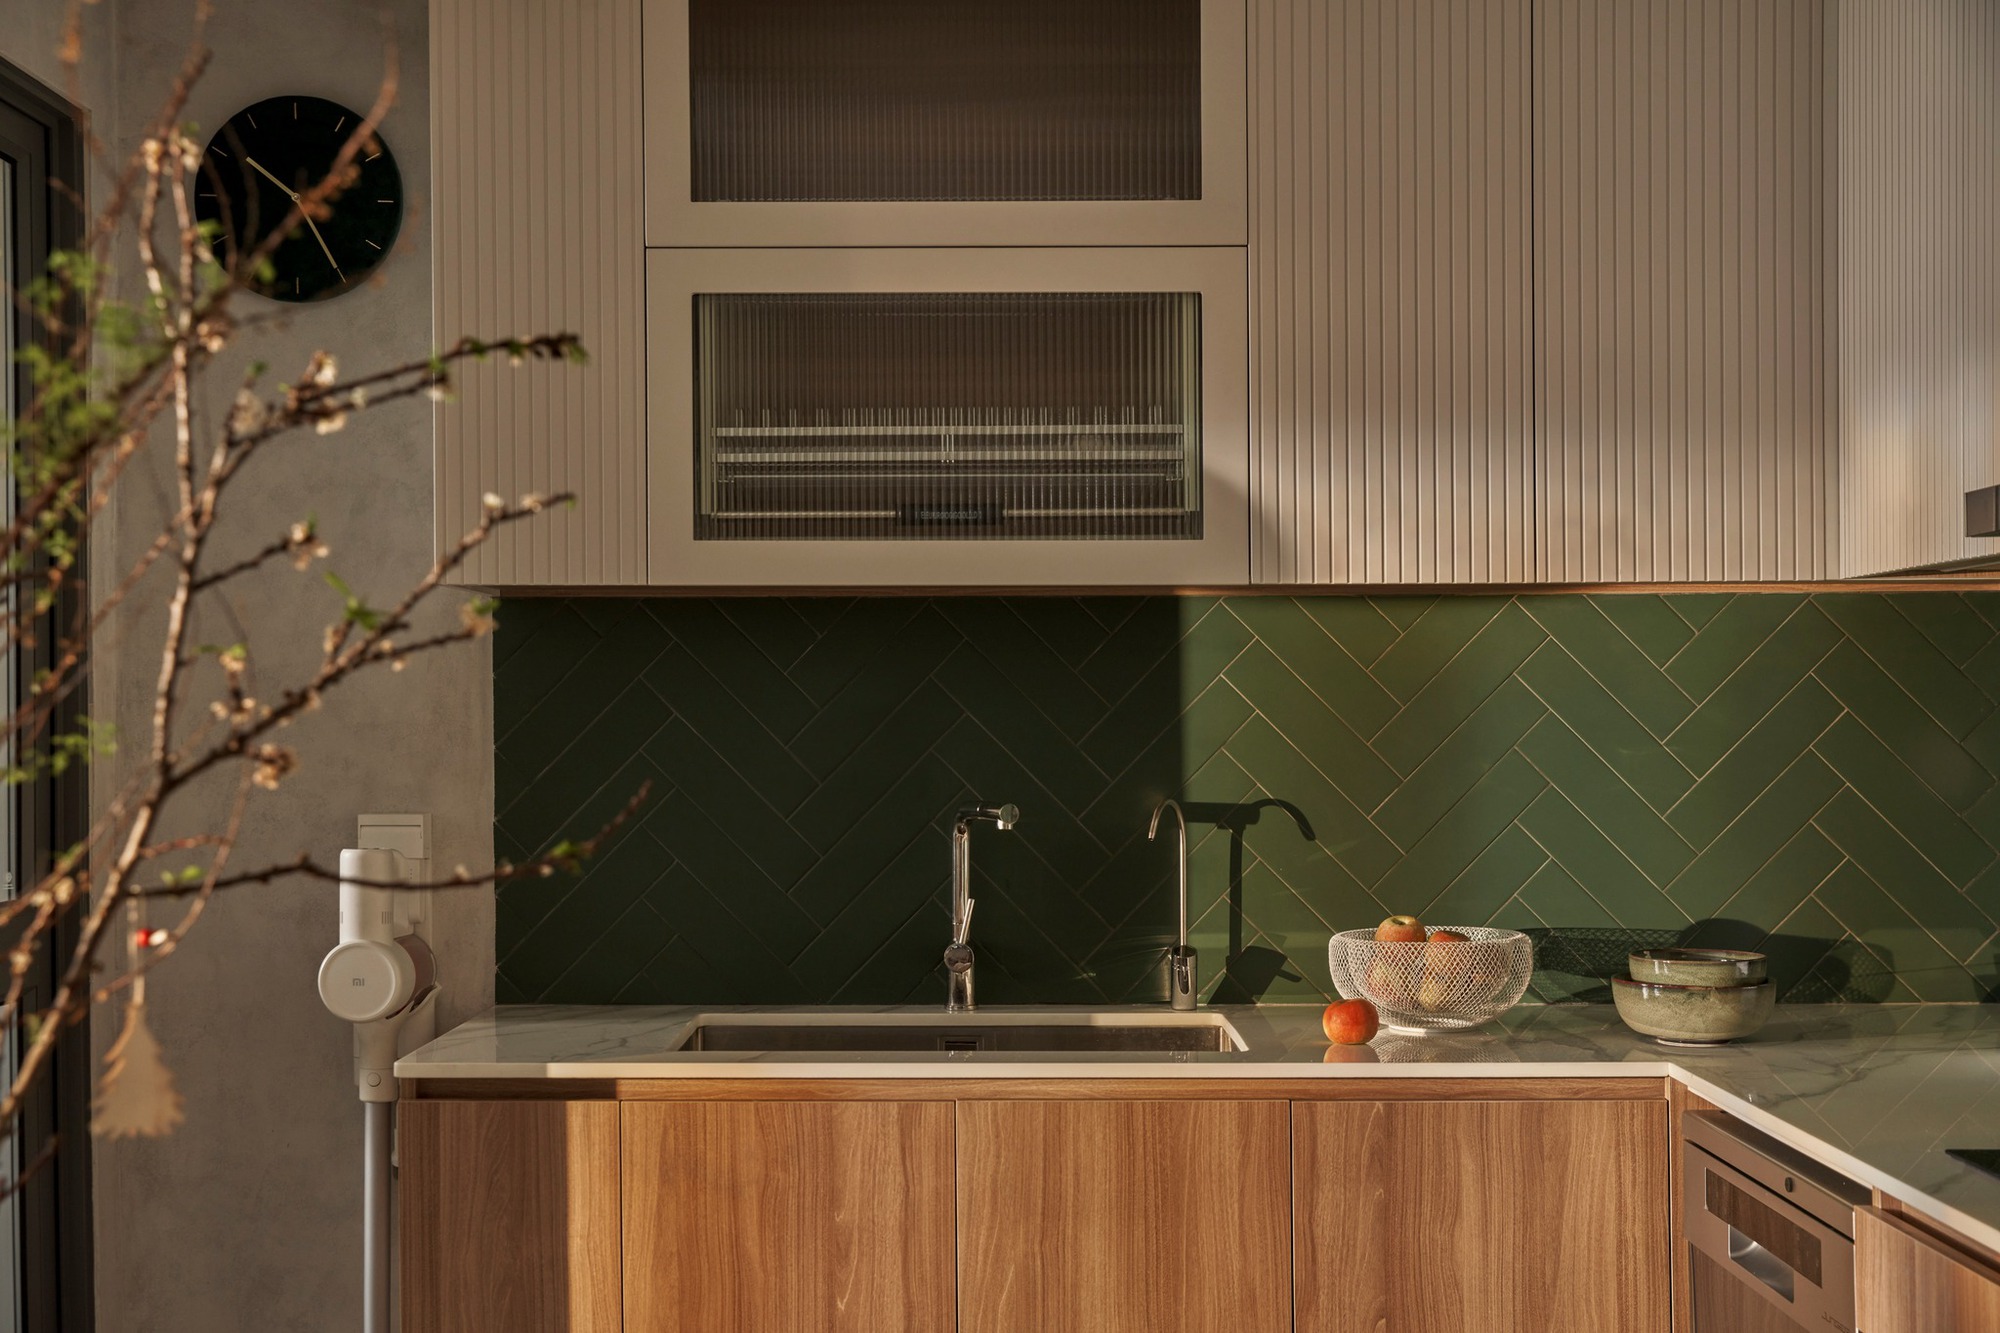 Căn bếp nhỏ với phong cách Wabi-sabi đẹp như thiết kế 3D của cặp vợ chồng trẻ - Ảnh 4.